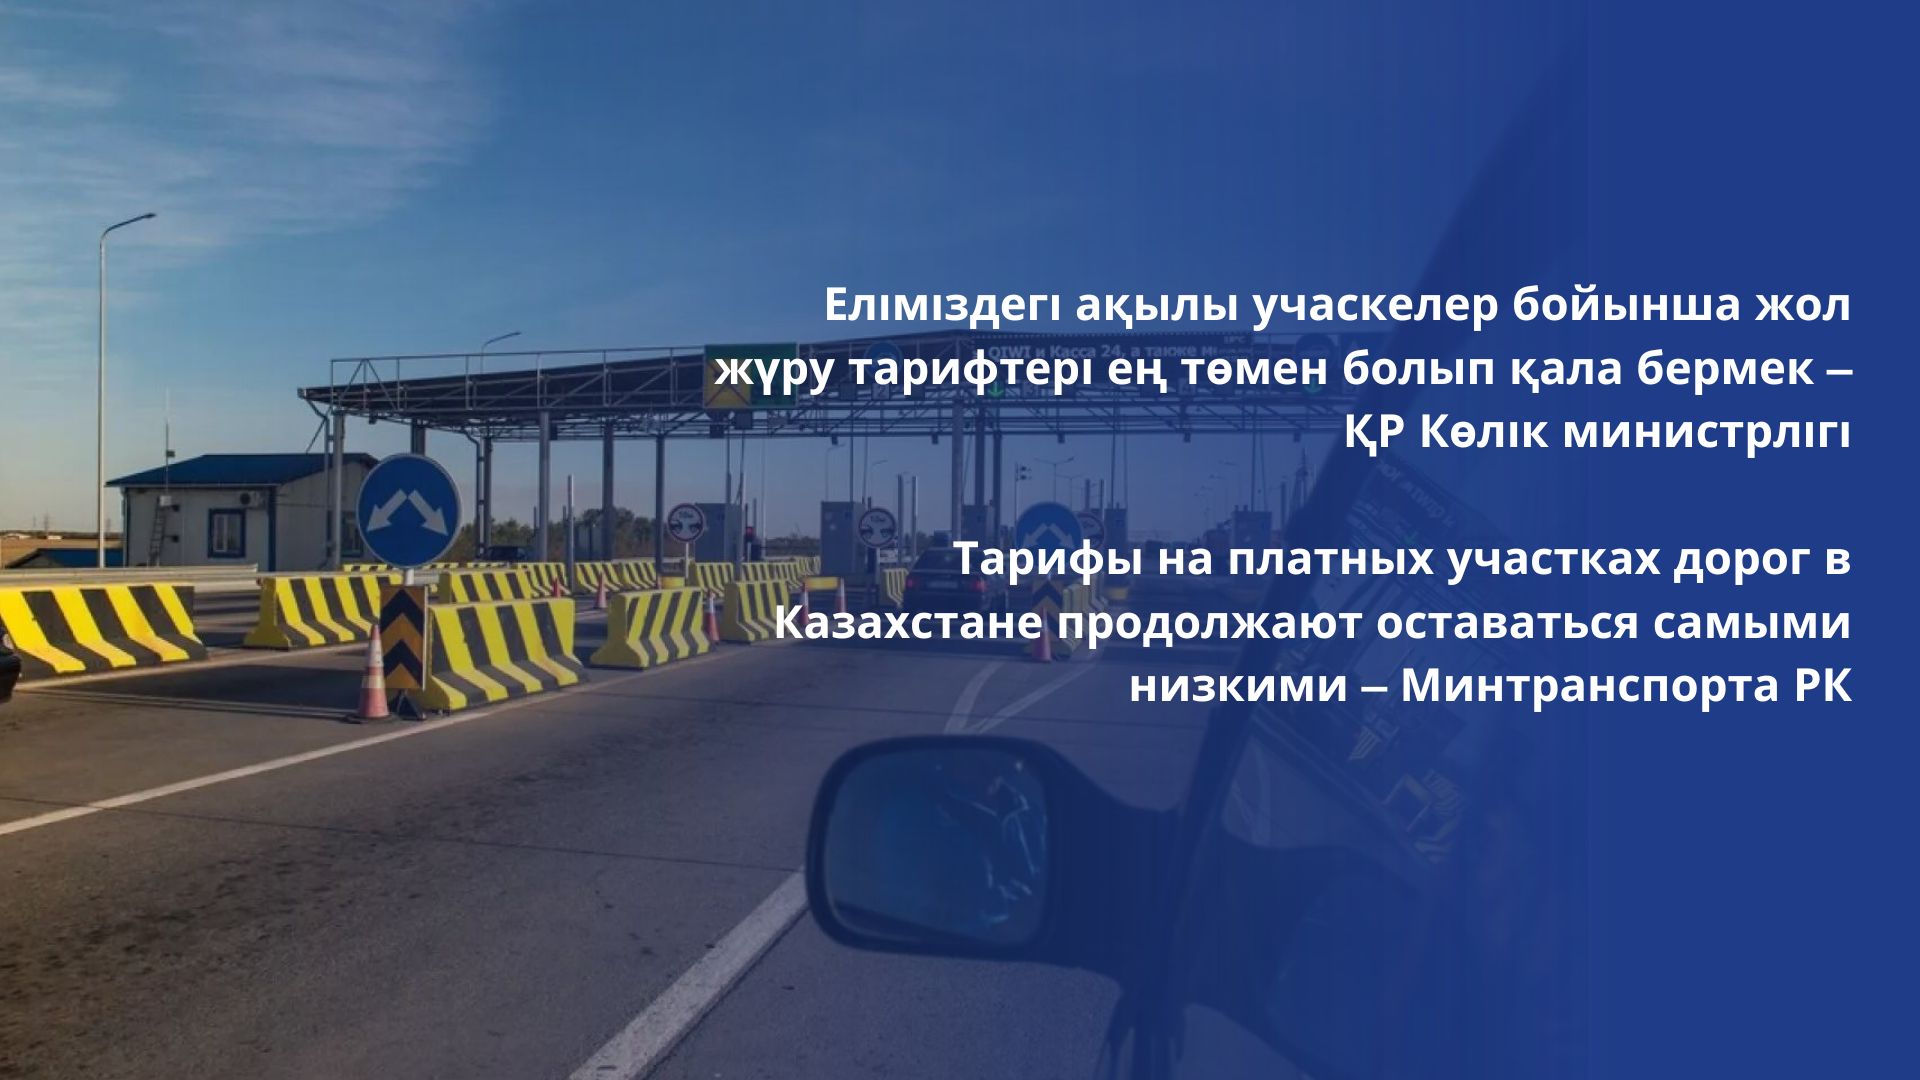 Тарифы на платных участках дорог в Казахстане продолжают оставаться самыми низкими – Минтранспорта РК